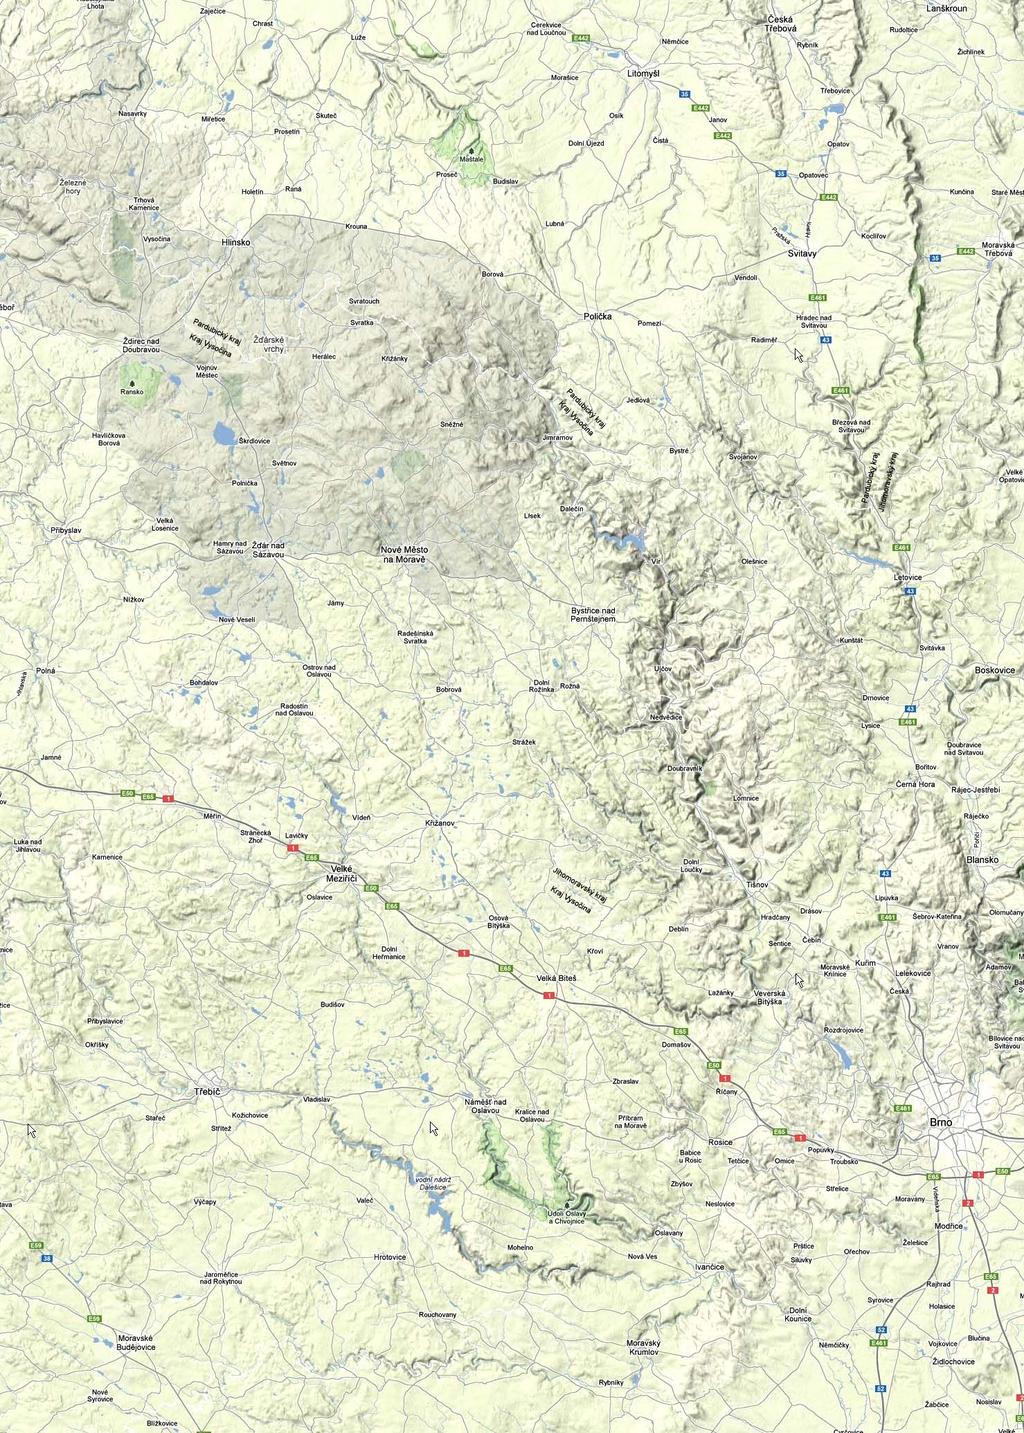 Abb. 2013-1/05-20 Karte der Böhmisch-Mährischen Höhe, östlicher Teil, aus